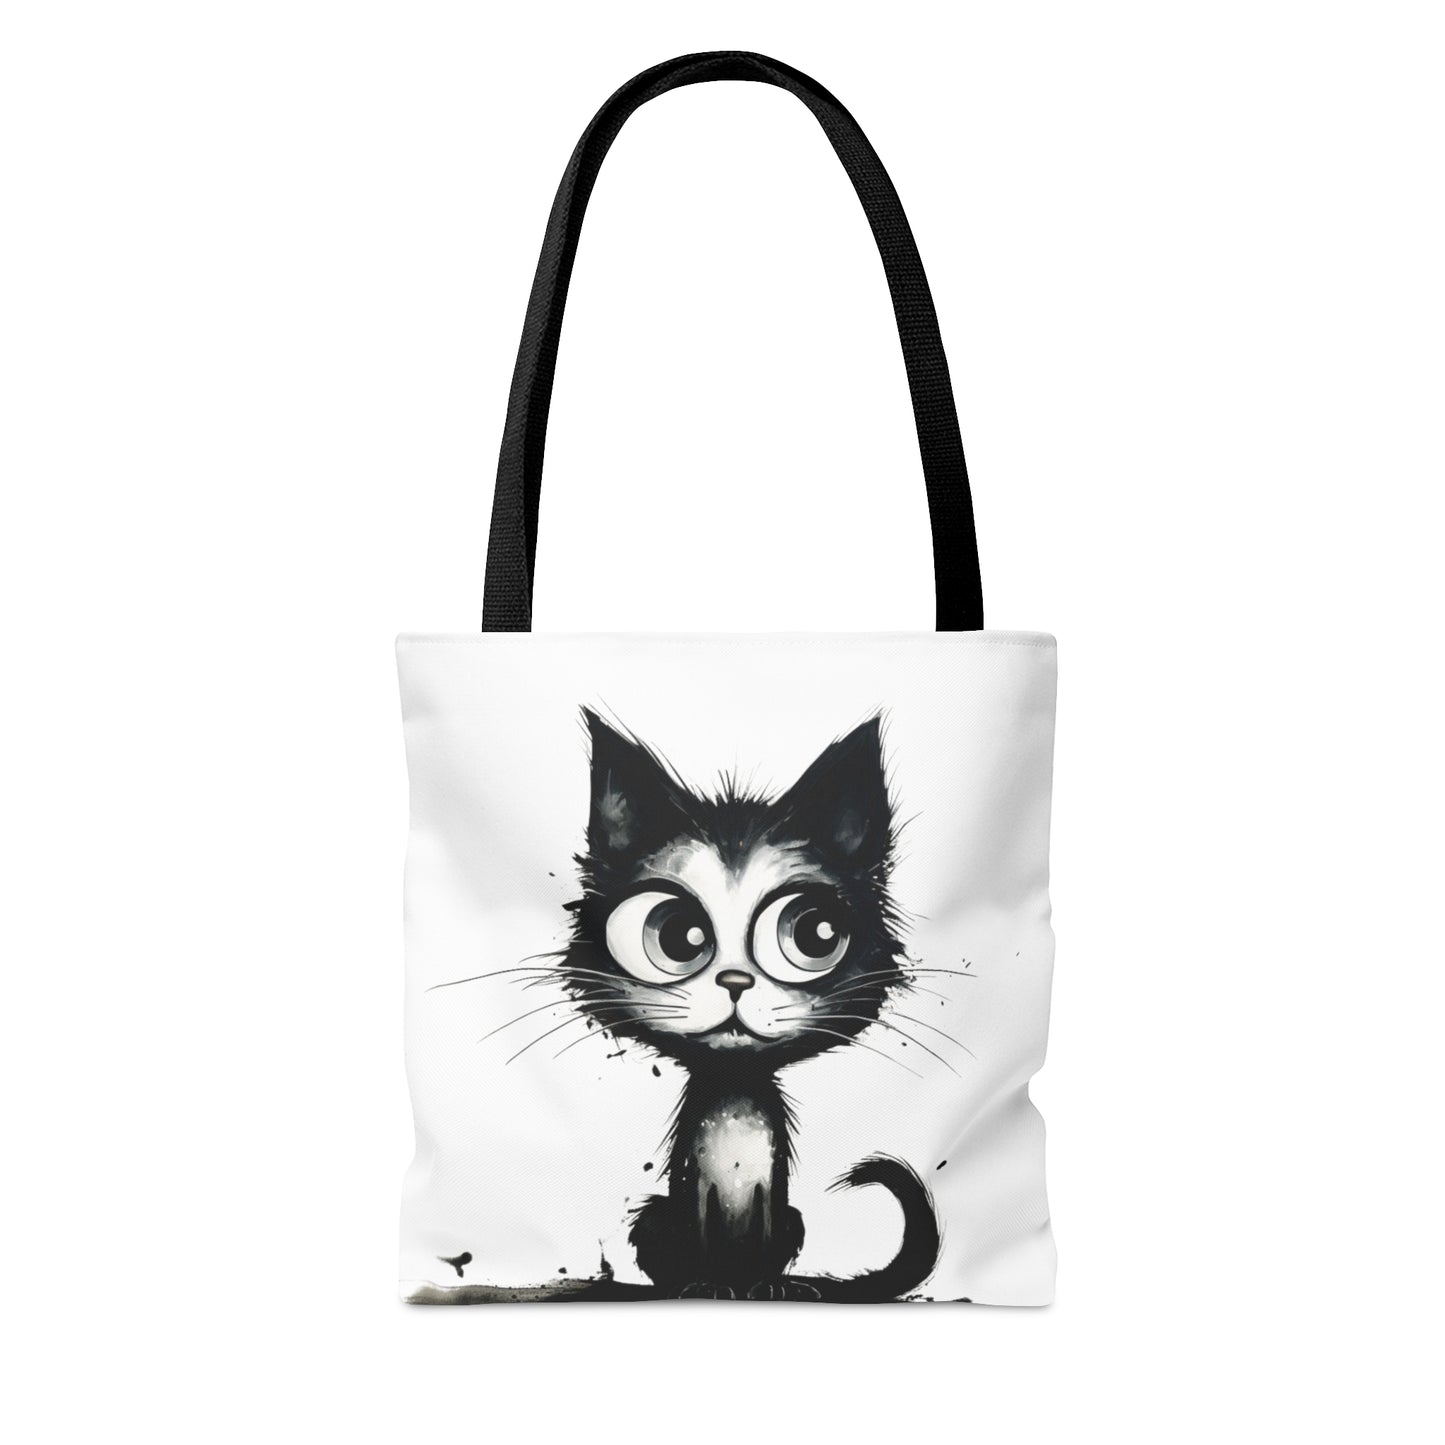 Sac fourre tout, Tot Bag, Adorable petit chat aux yeux ronds, noir et blanc, parfaite idée cadeau